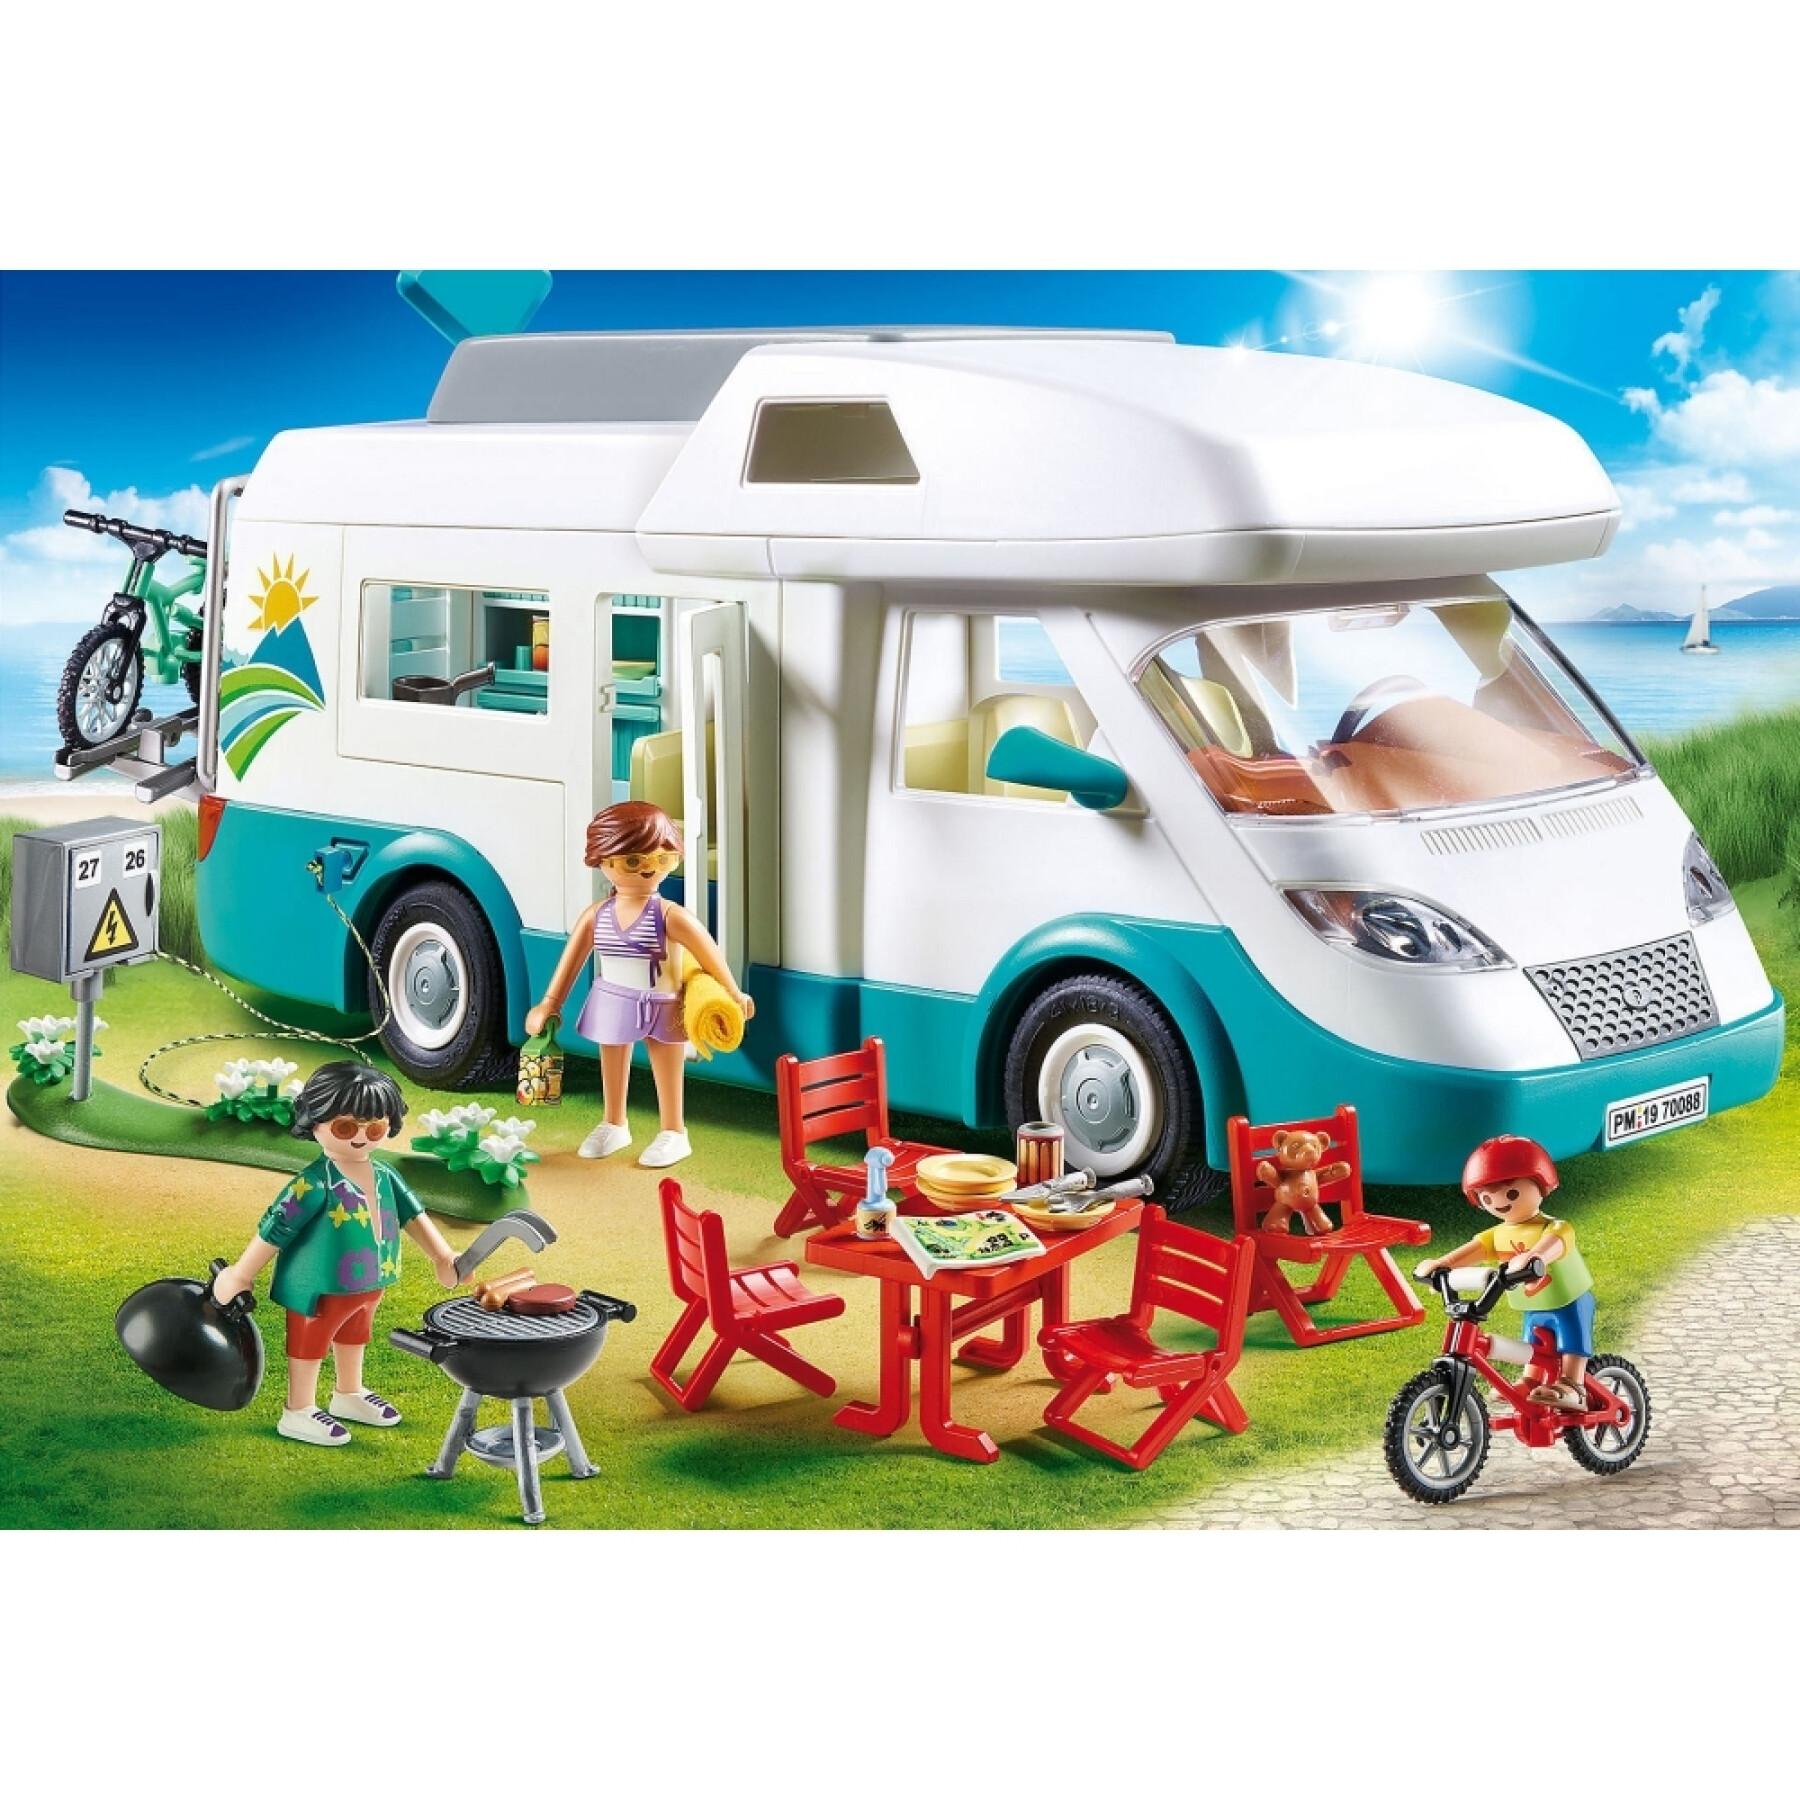 Playmobil Summer Fun - Caravane d'été